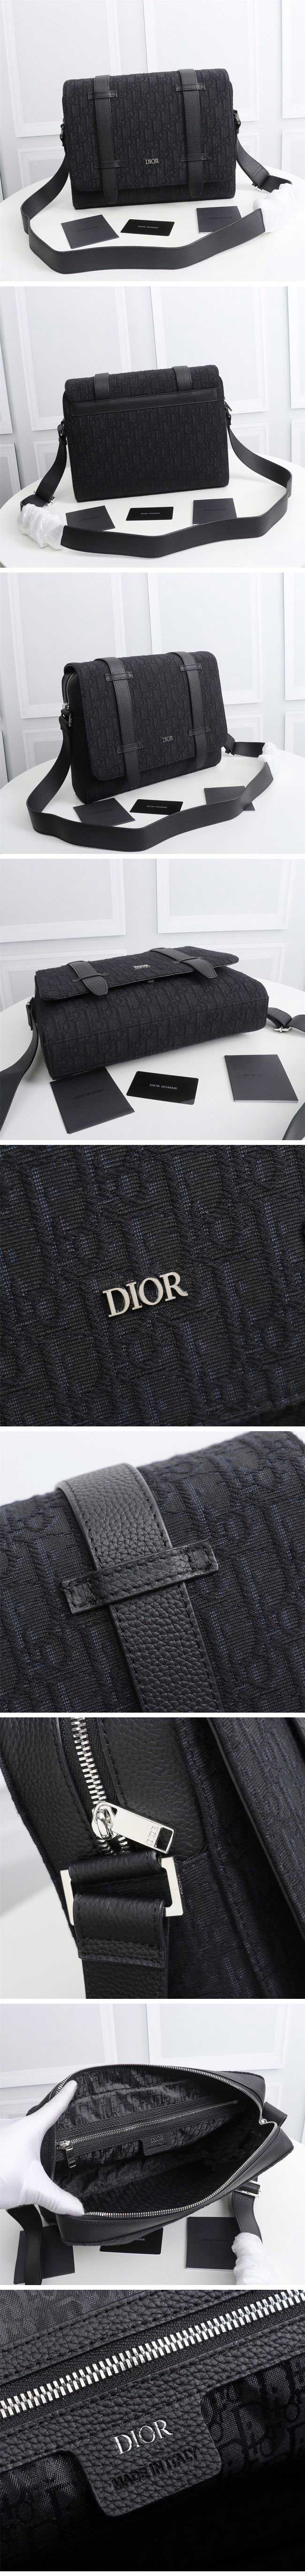 Dior Oblique Jacquard Messenger Bag Black ディオール オブリーク ジャカード メッセンジャー バッグ ブラック【N級】